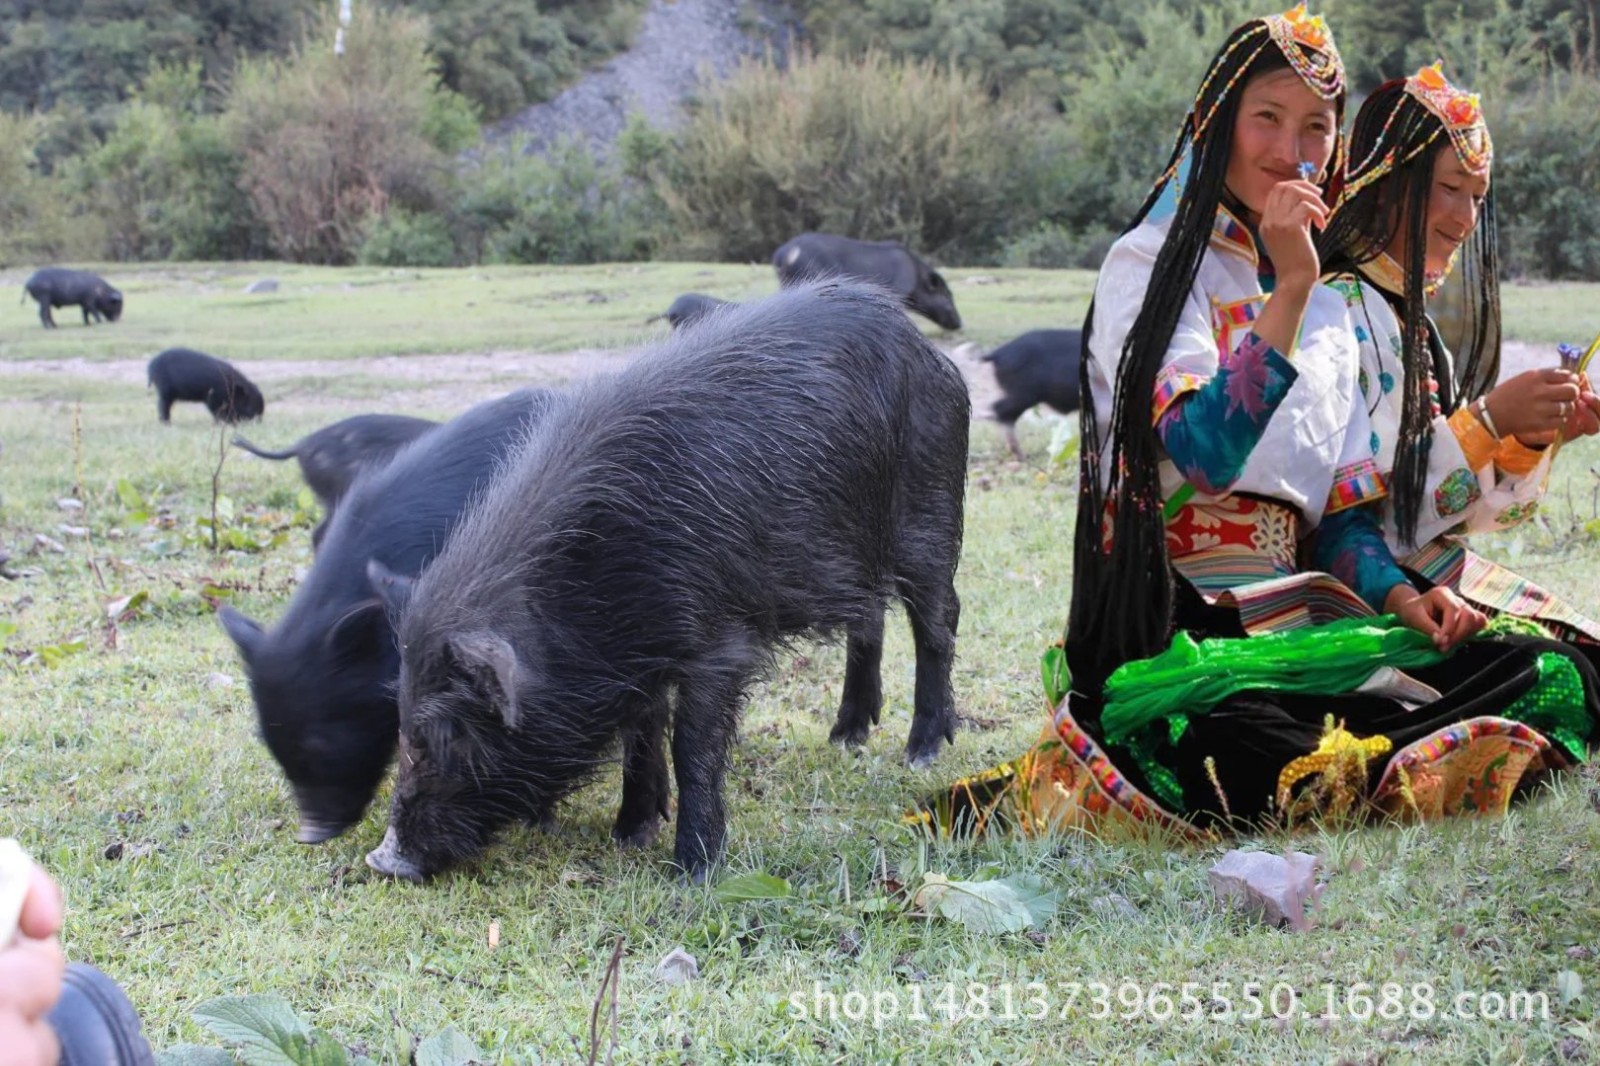 西藏山南:西藏香猪养殖走出致富之路
